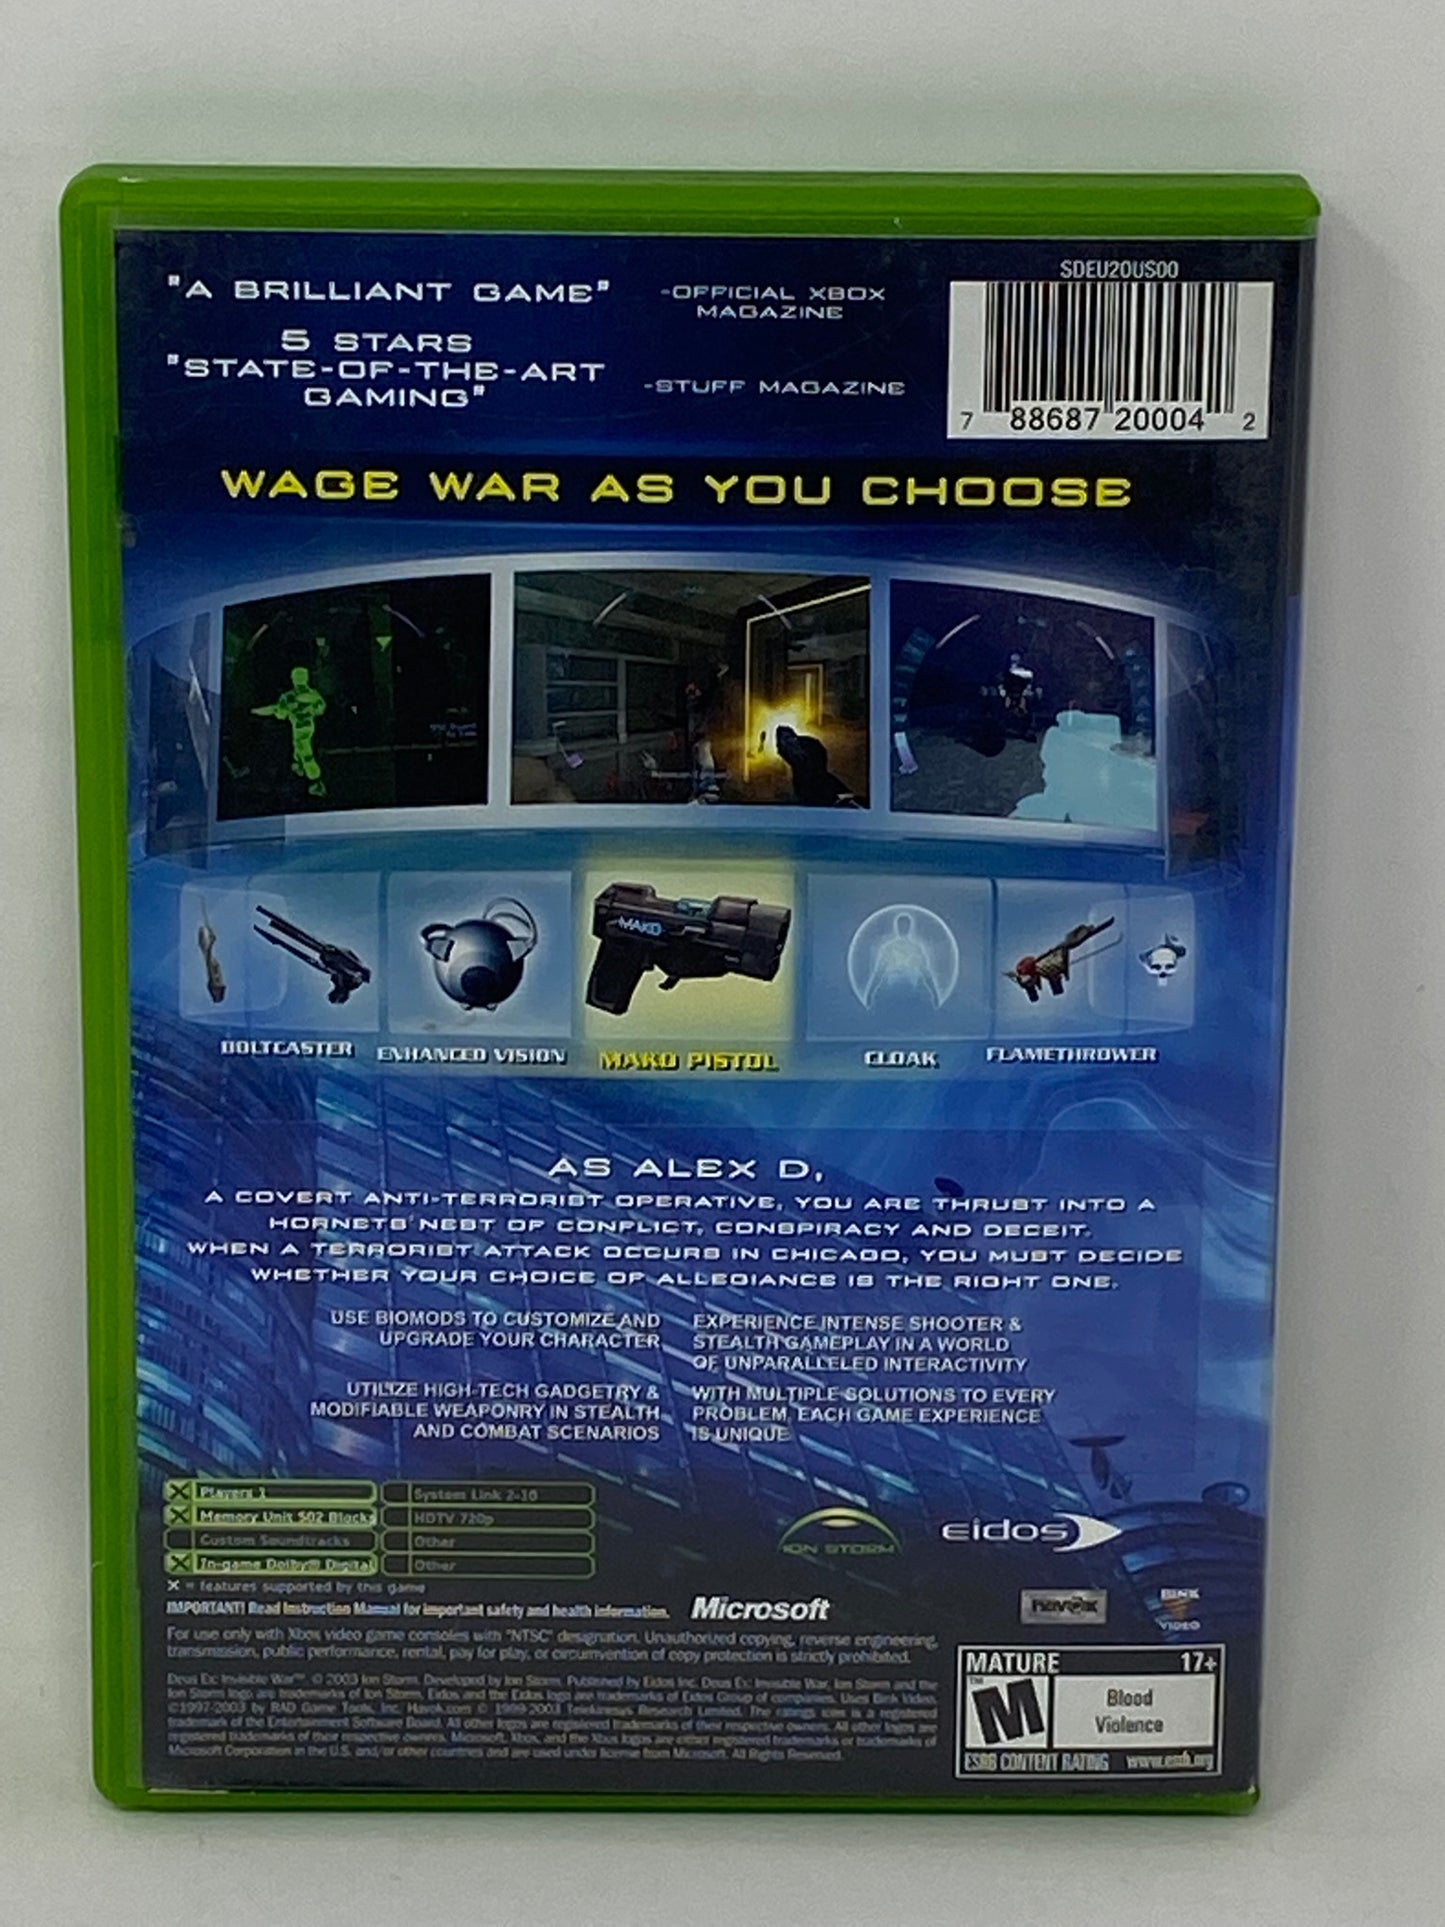 XBox - Deus Ex Invisible War